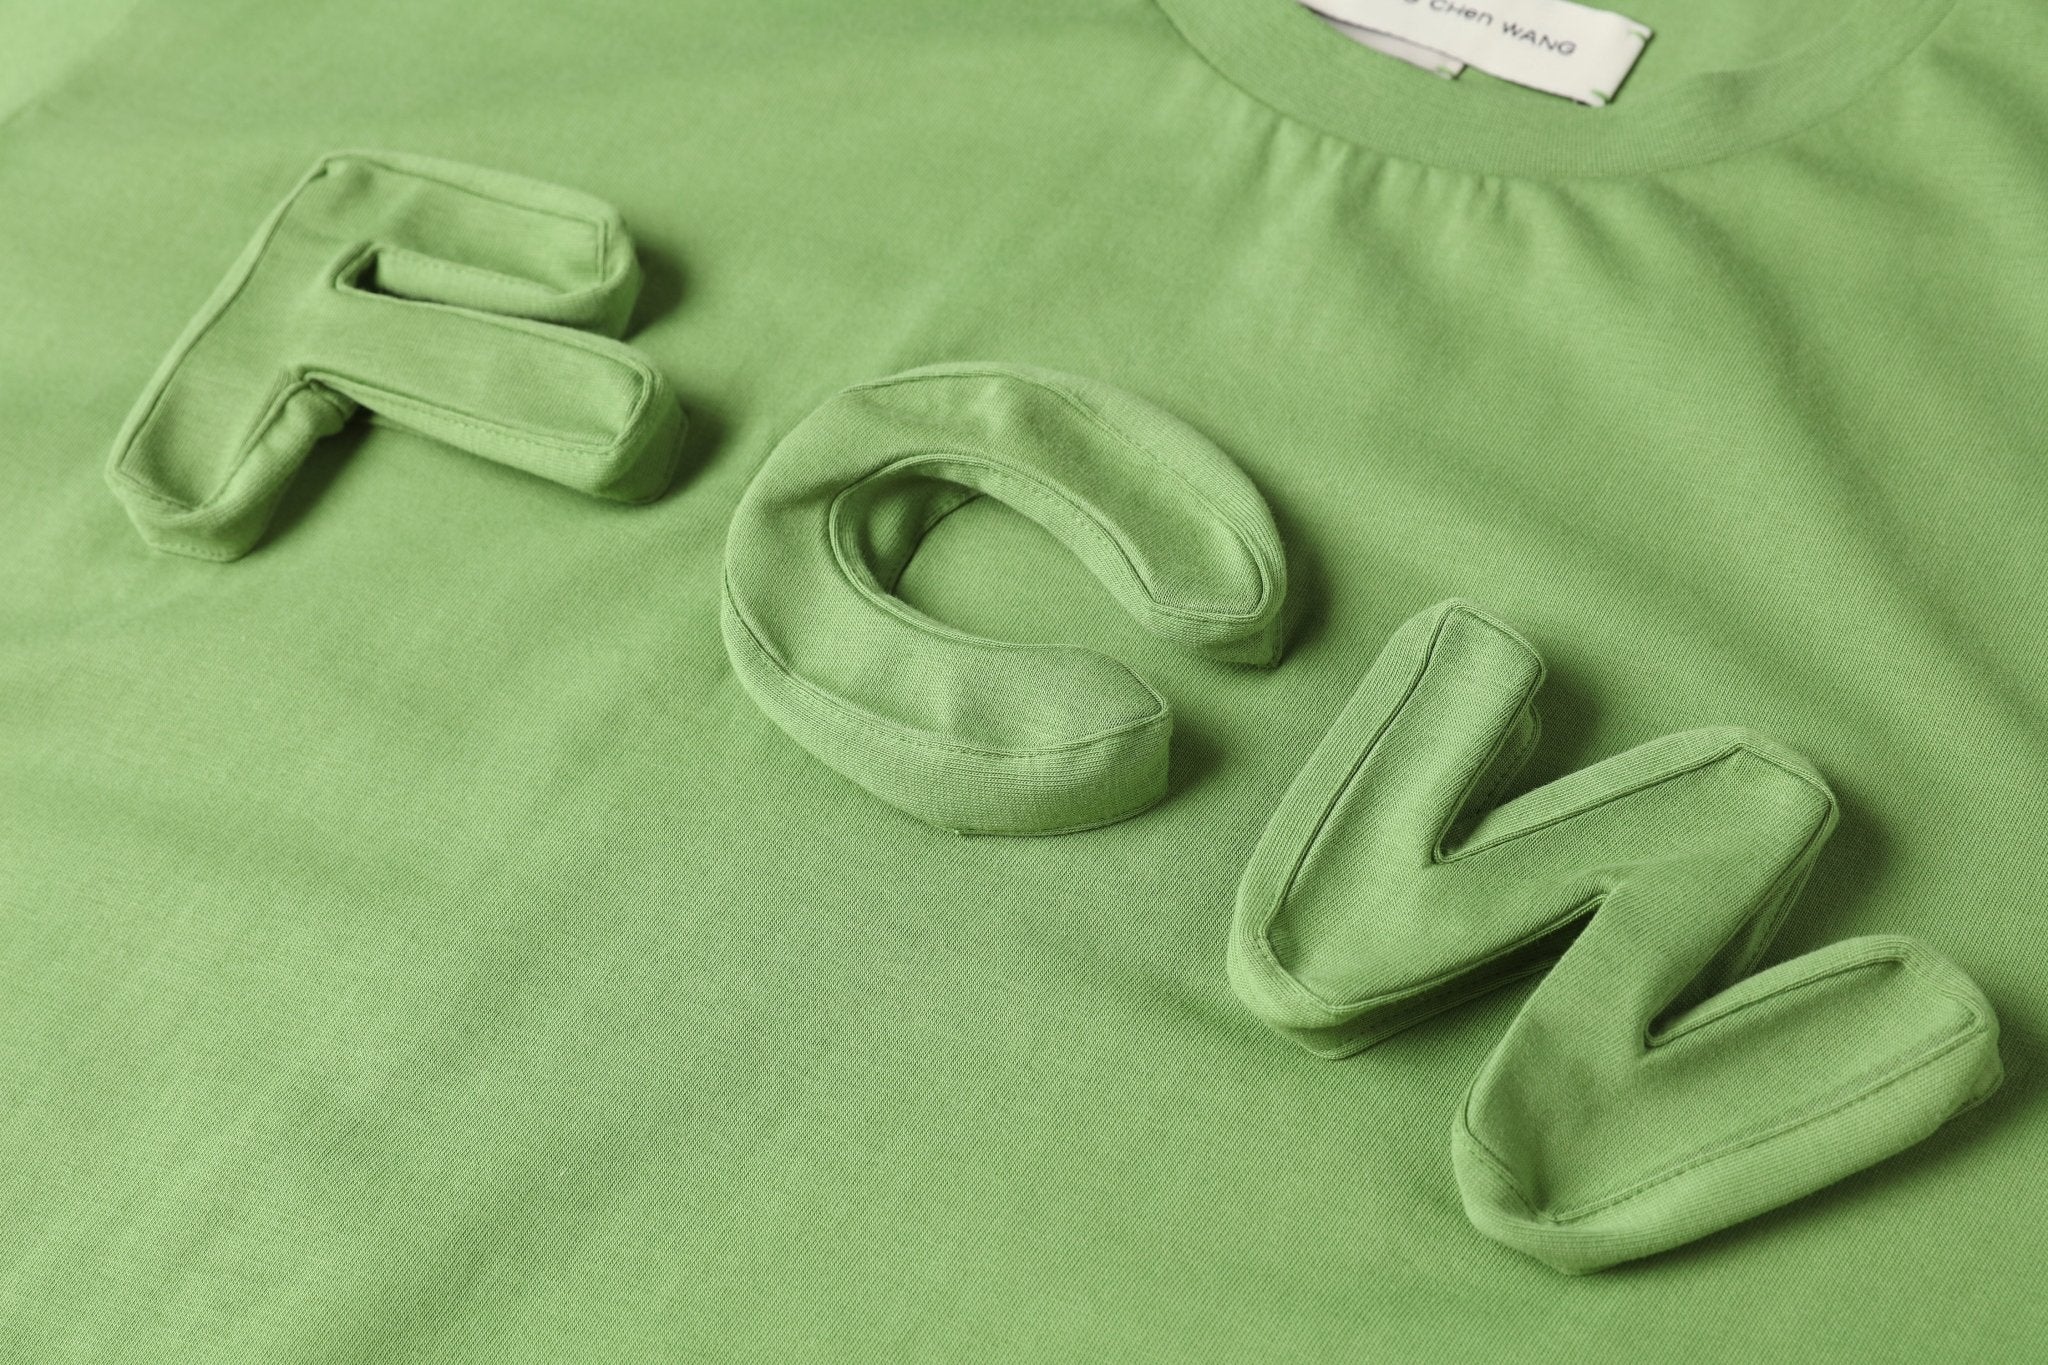 FENGCHEN WANG Green 3D Logo T-shirt | MADA IN CHINA